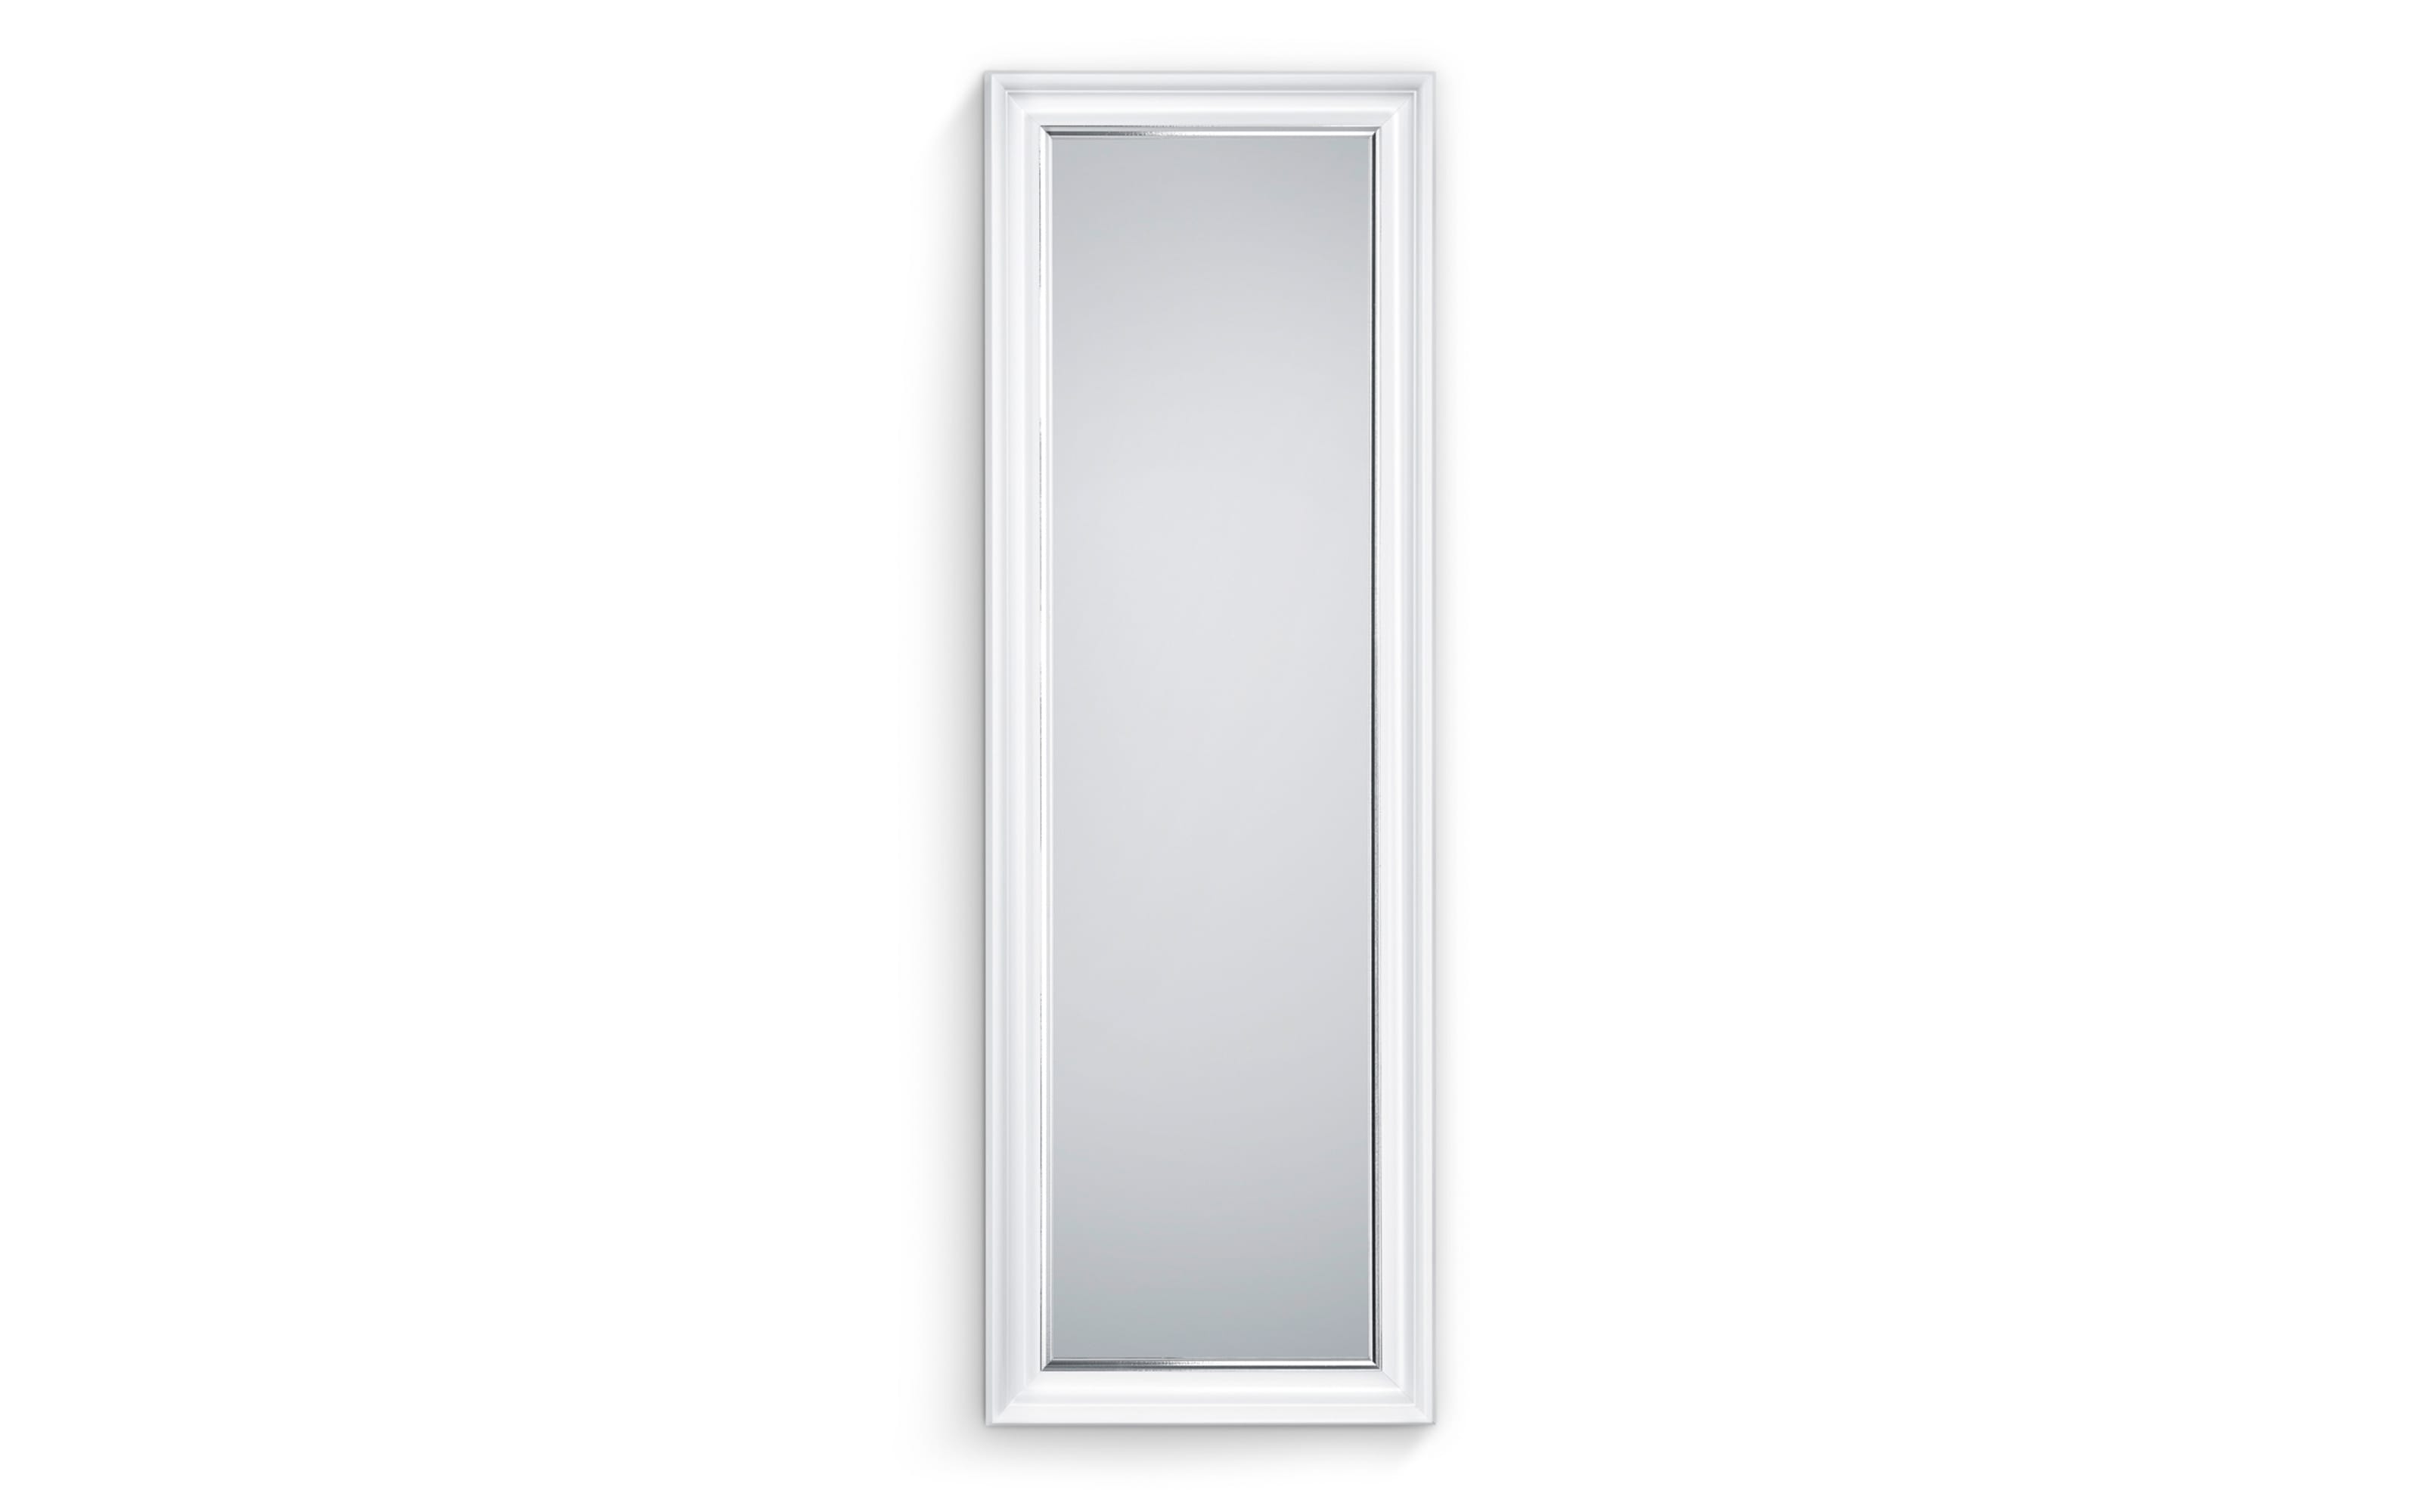 Rahmenspiegel Ina, weiß/chromfarbig, 50 x 150 cm